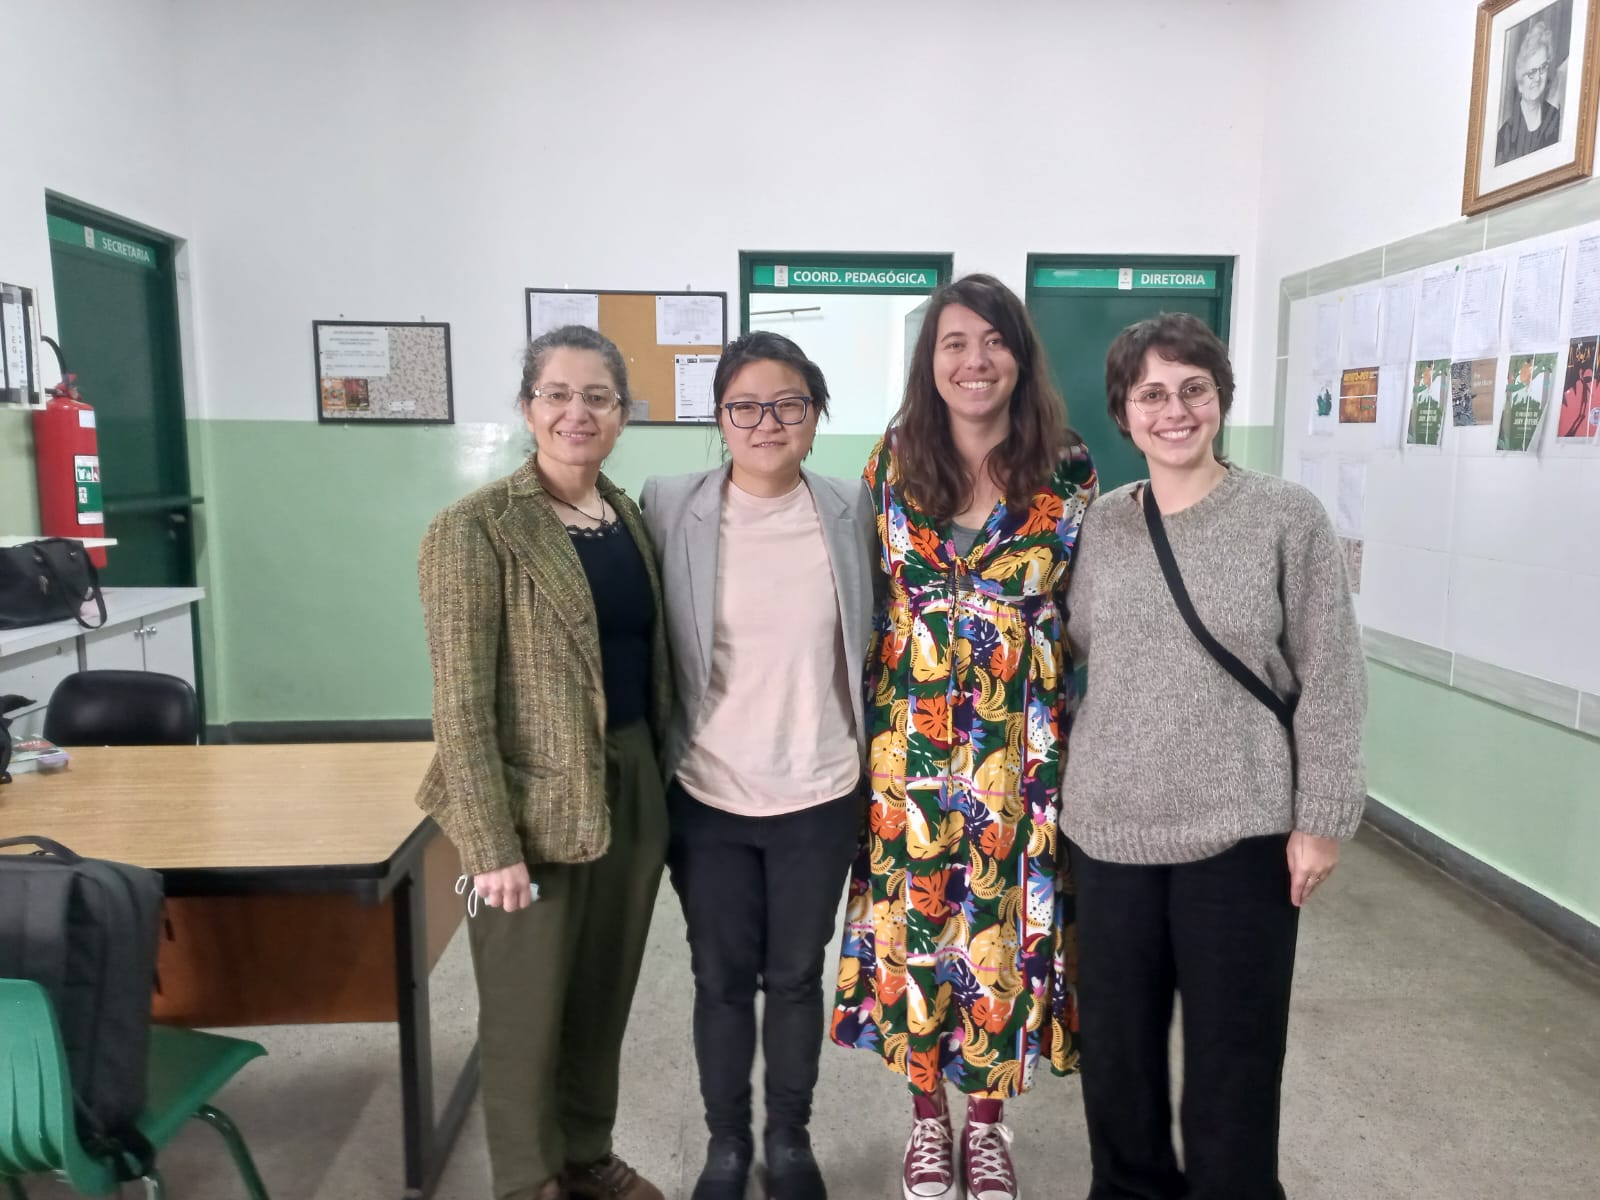 Quatro mulheres estão em pé em uma sala de escola.